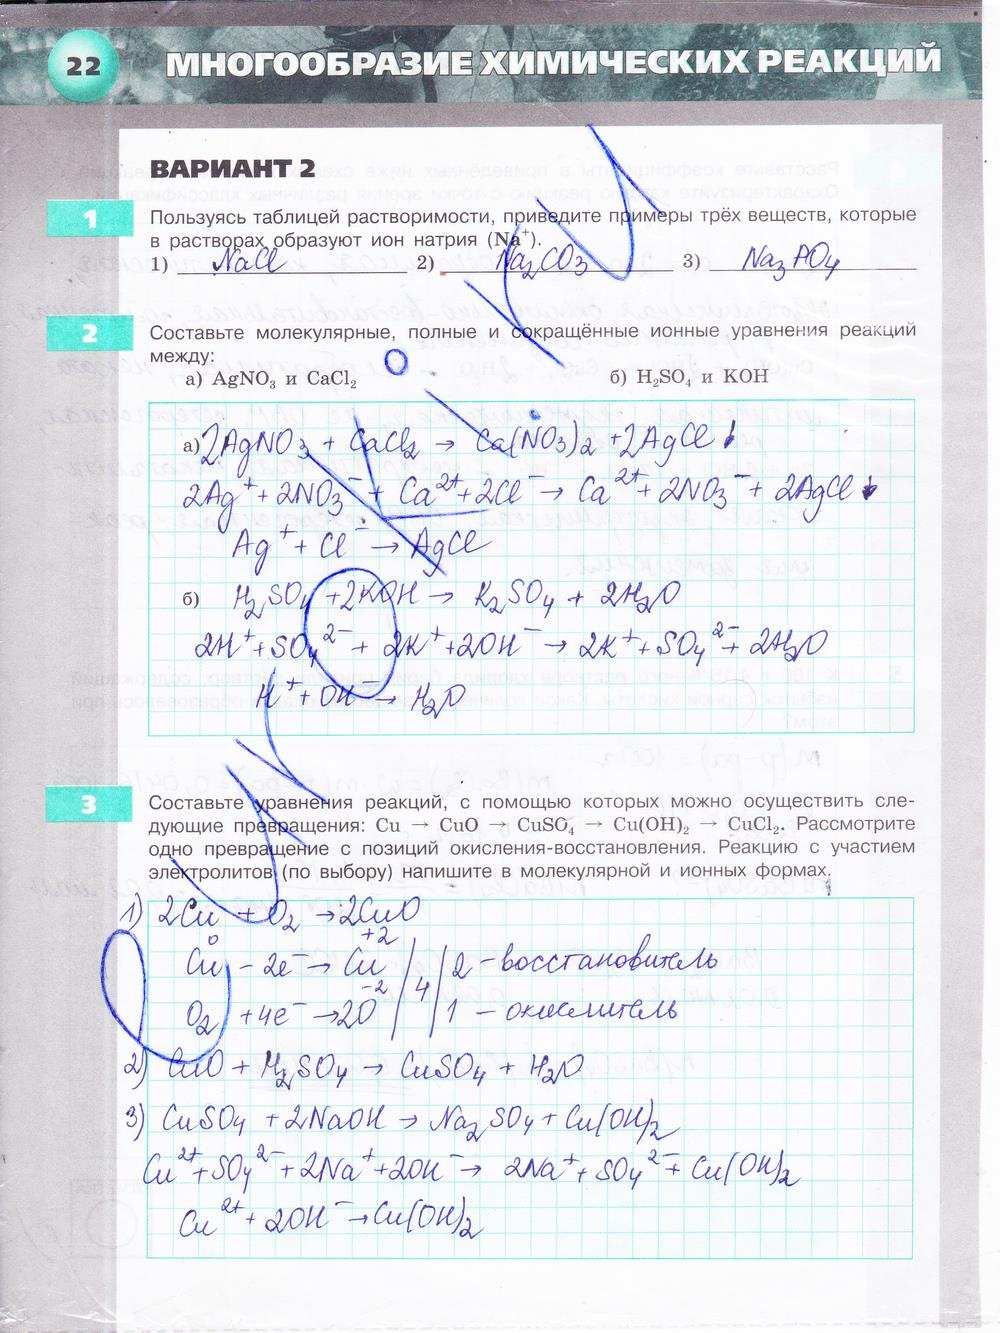 гдз 9 класс тетрадь-экзаменатор страница 22 химия Бобылева, Бирюлина